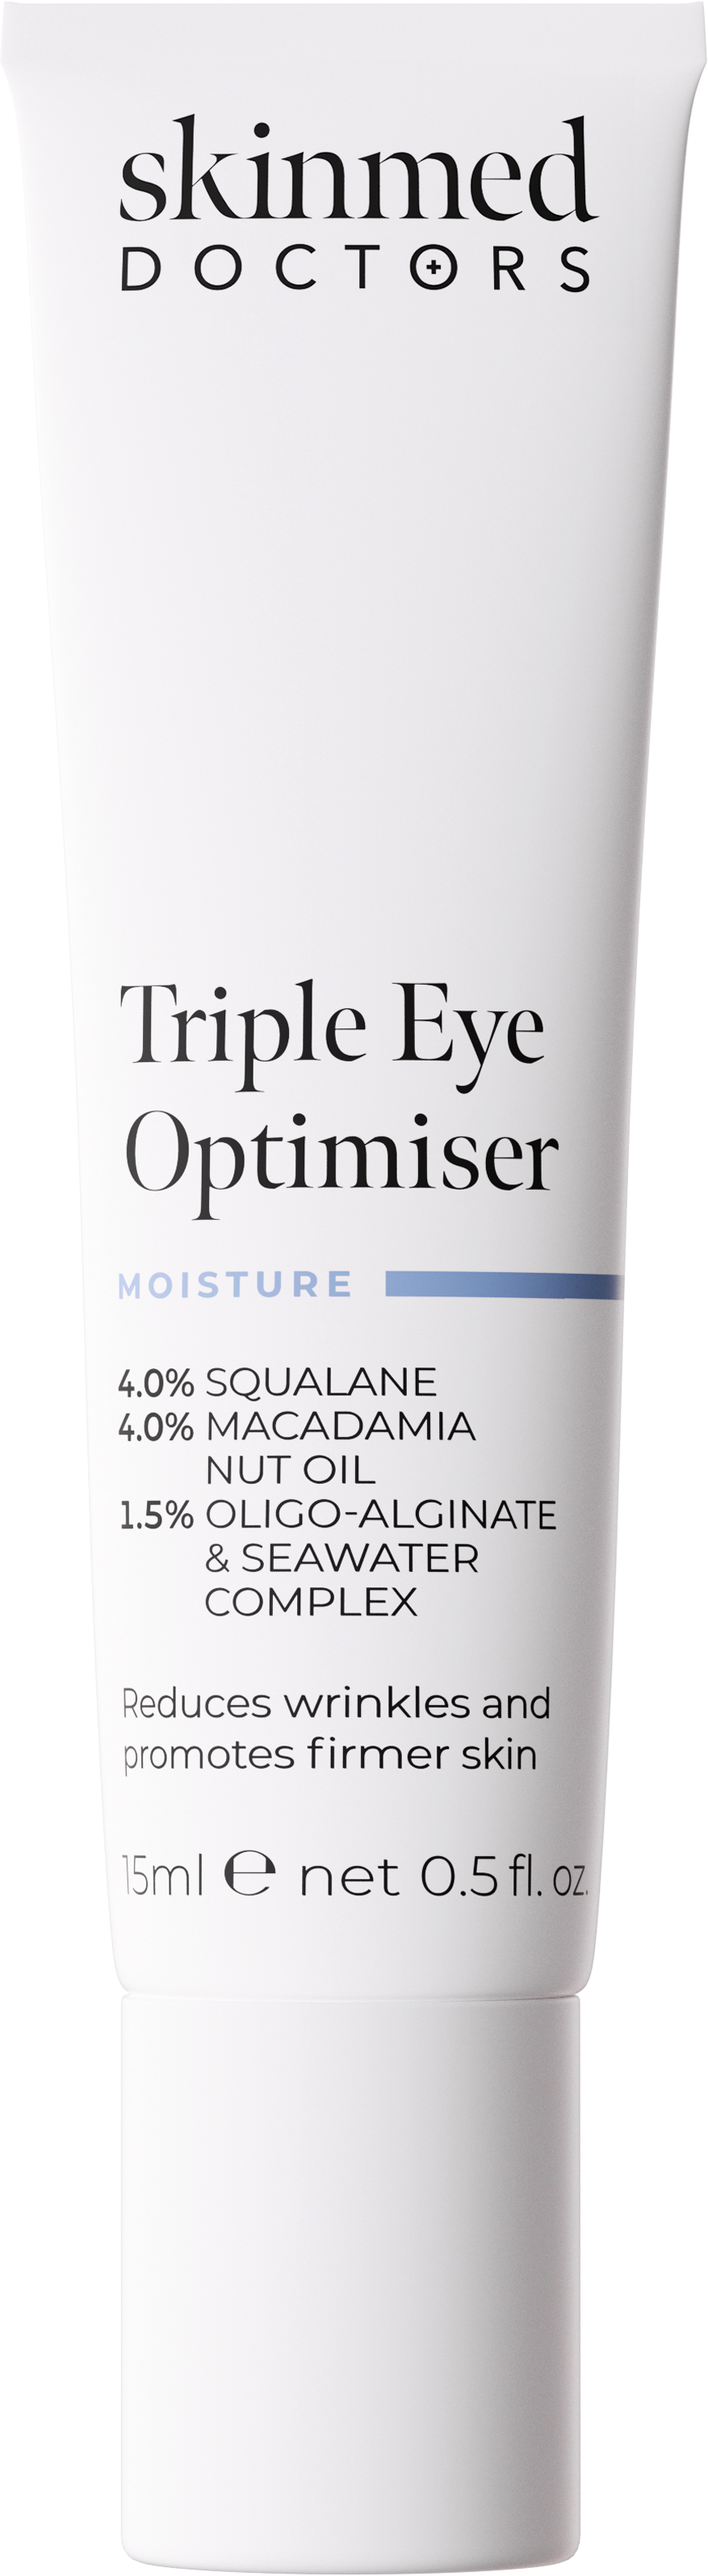 SMD Triple Eye Optimiser